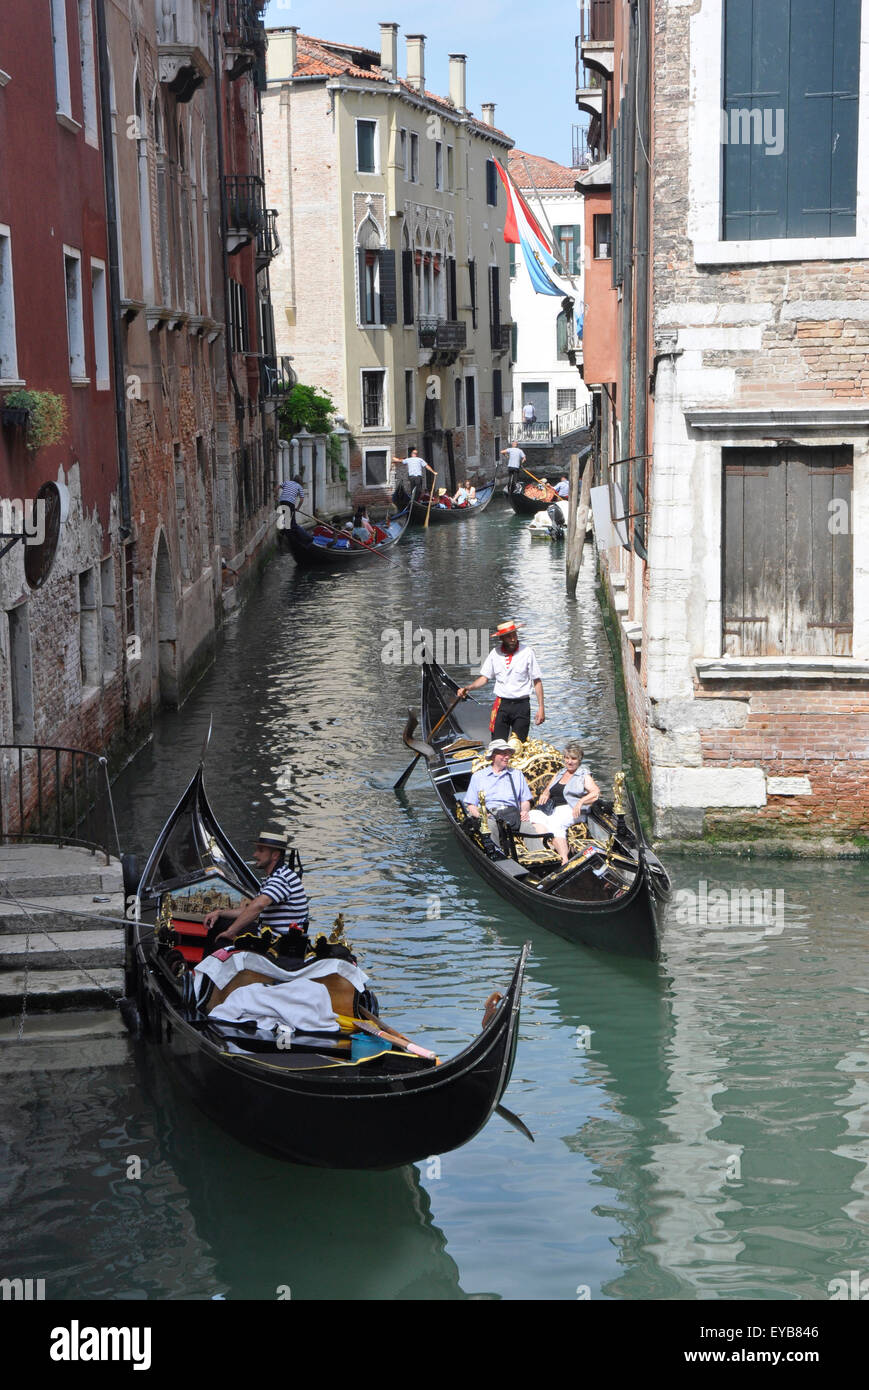 Italia Venezia San Marco regione - stretto canale off Canale Grande - tourist gondola la congestione del traffico - la luce solare + ombre Foto Stock